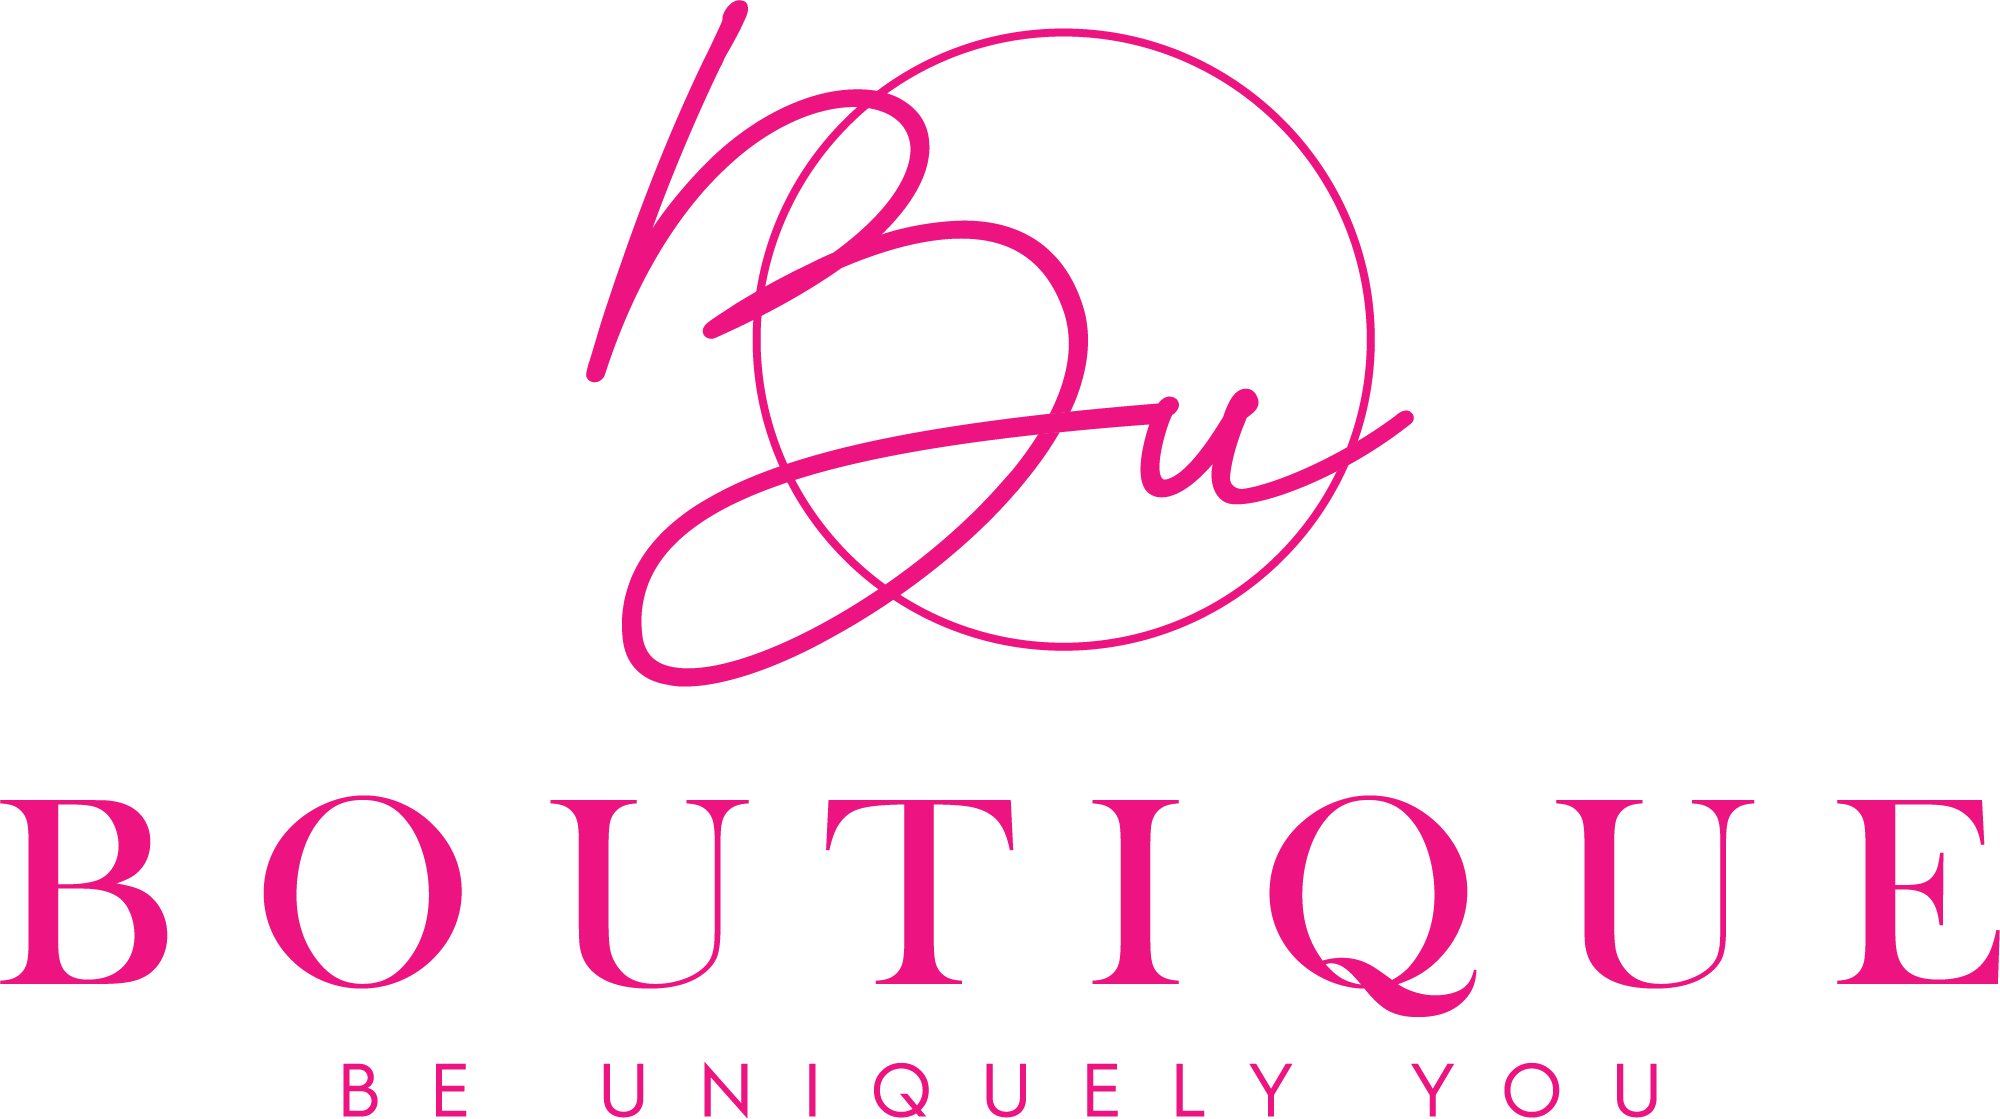 BU Boutique LLC